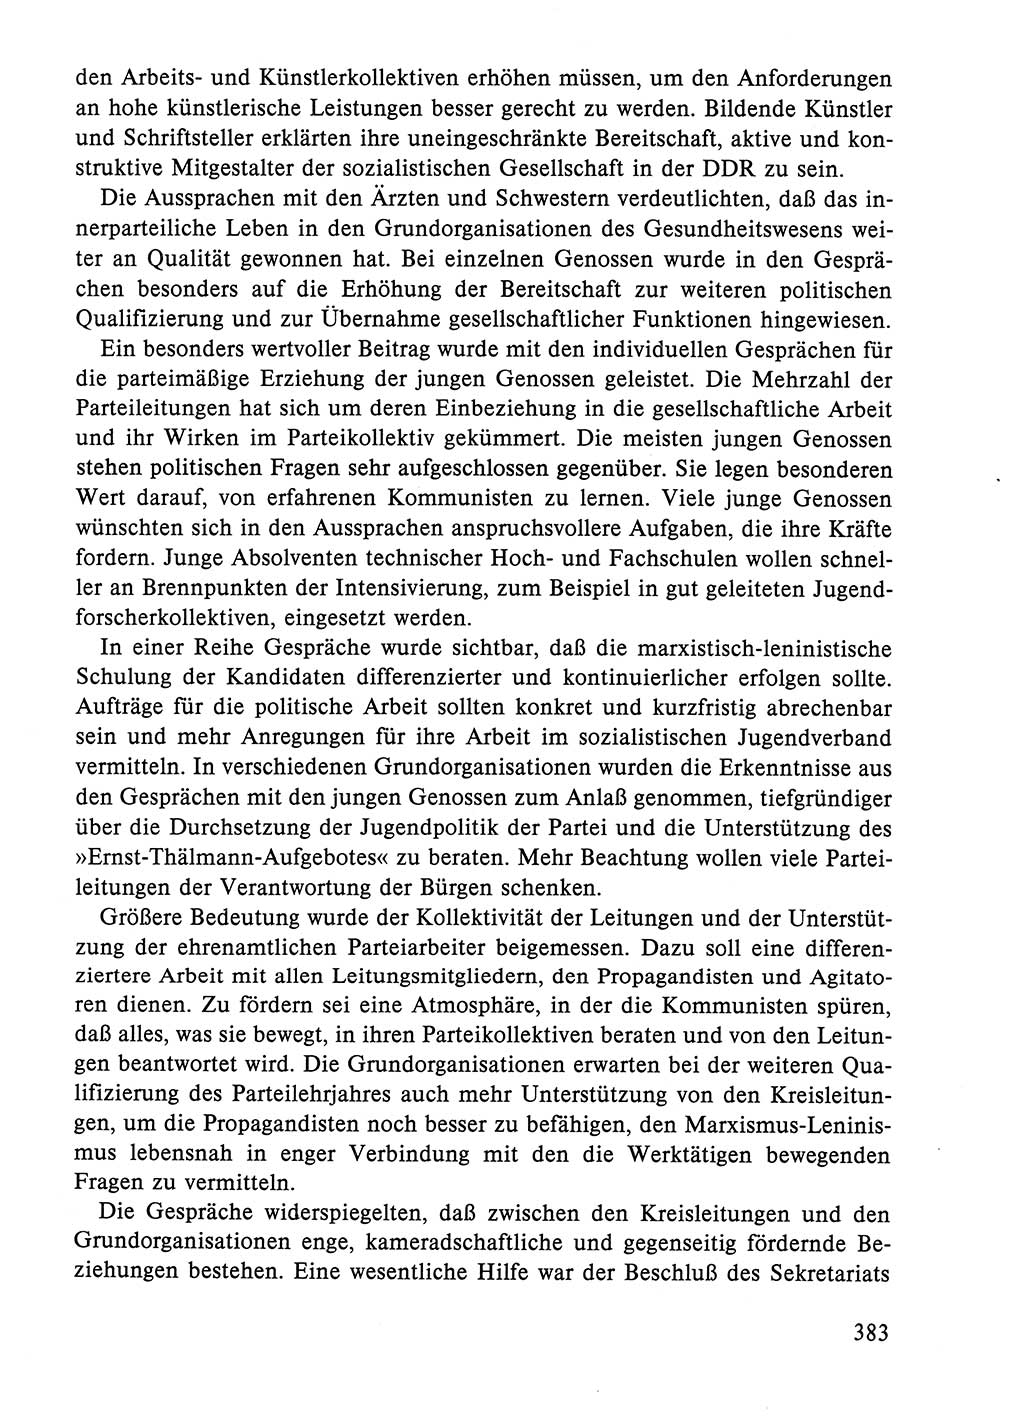 Dokumente der Sozialistischen Einheitspartei Deutschlands (SED) [Deutsche Demokratische Republik (DDR)] 1984-1985, Seite 383 (Dok. SED DDR 1984-1985, S. 383)